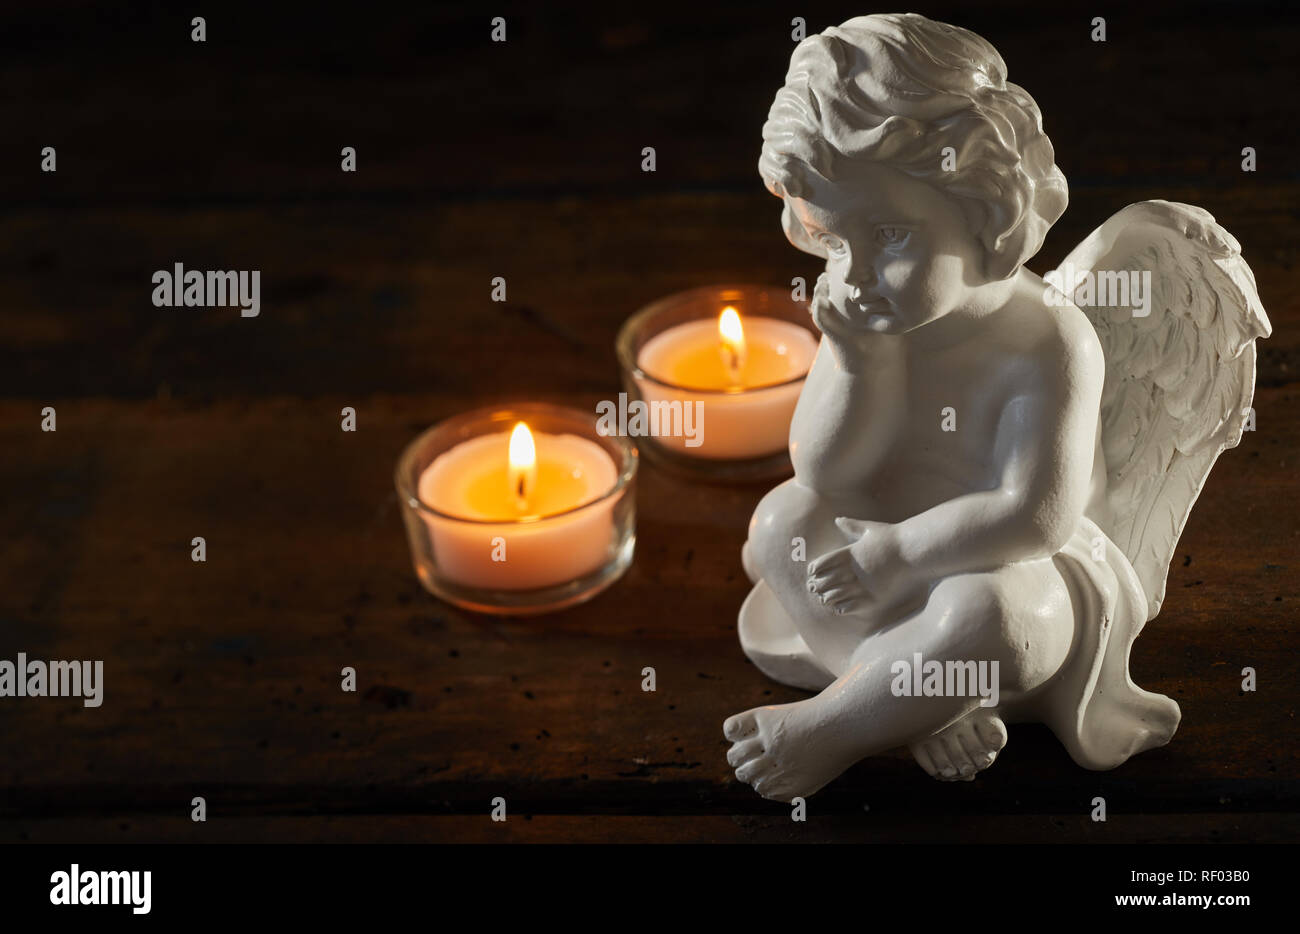 Engel Figur mit brennenden Kerzen auf einem dunklen Hintergrund mit Kopie  Raum konzeptionelle von Trauer und Verlust Stockfotografie - Alamy